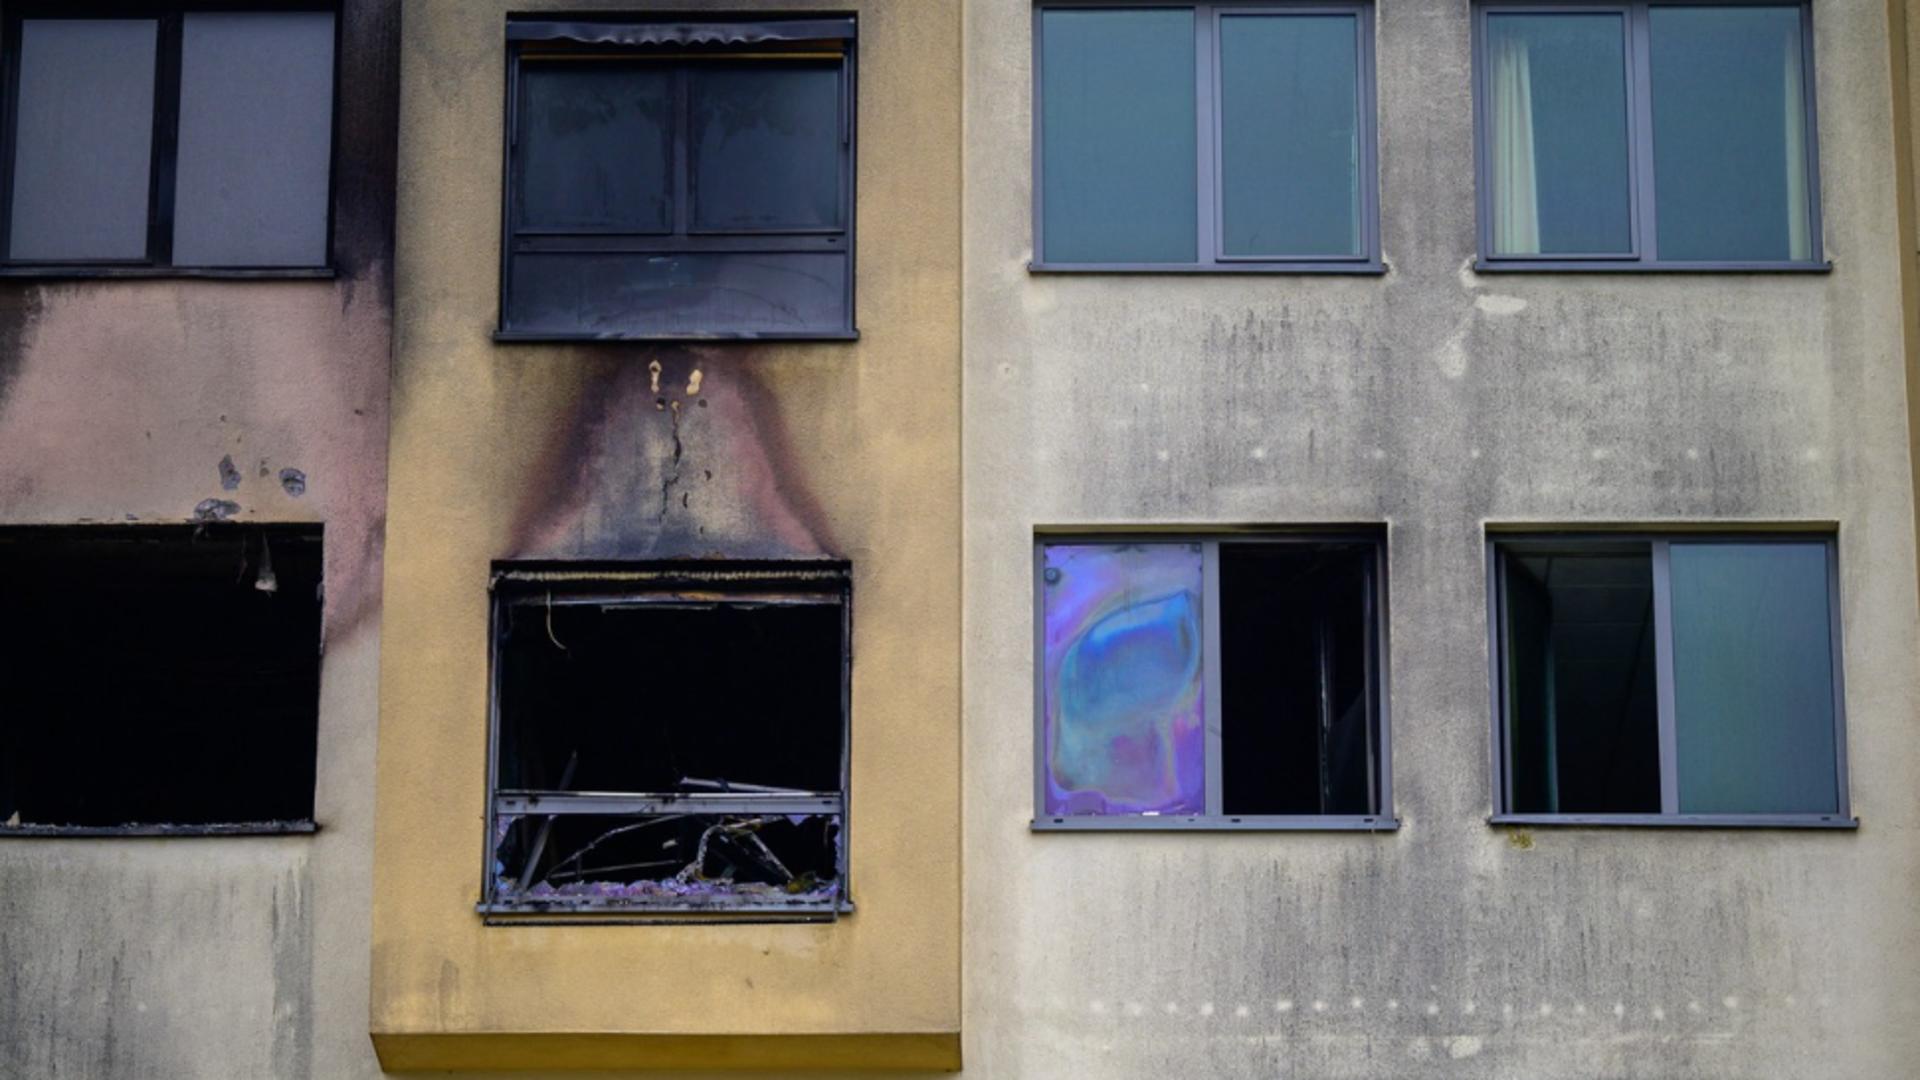 Patru morți în urma unui incendiu izbucnit la un spital din Germania / Foto: Profimedia